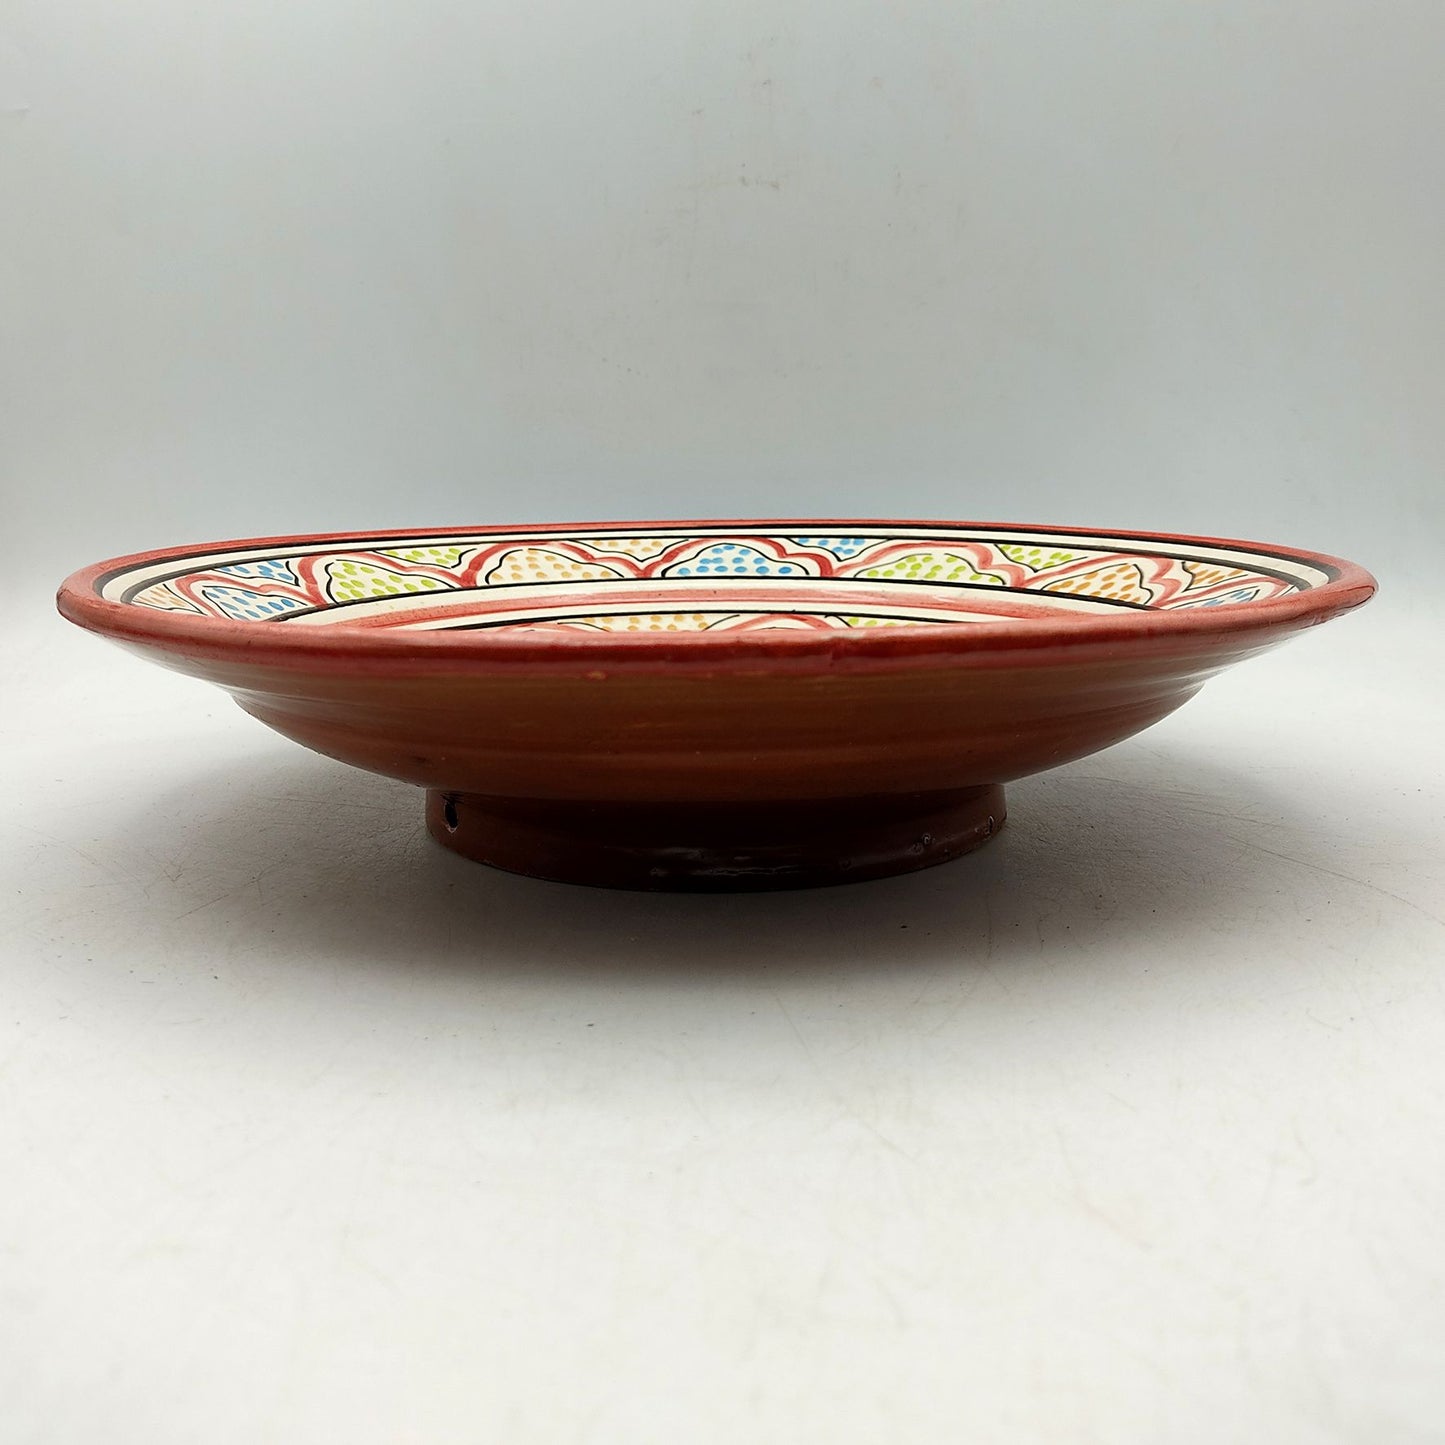 Piatto Ceramica Terracotta Parete Diam.27cm Etnico Marocchino Marocco 1101221018